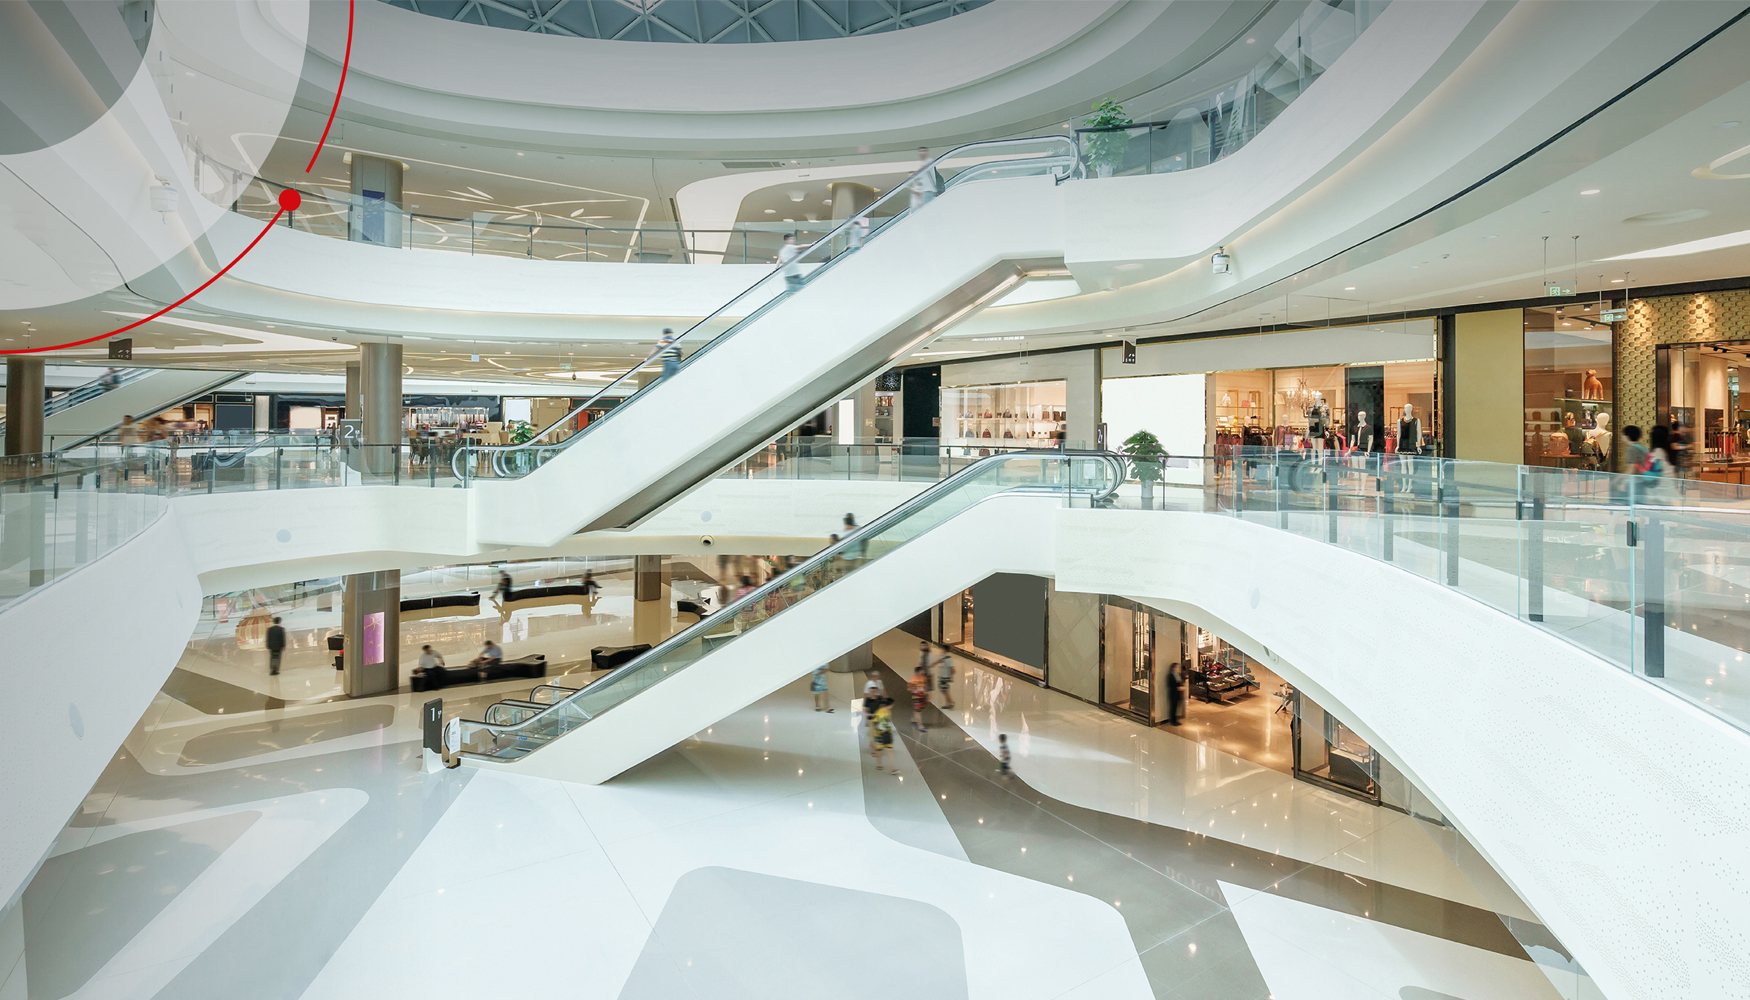 Con un diseo del proyecto adecuado, las cmaras pueden cubrir visualmente la totalidad del centro comercial...